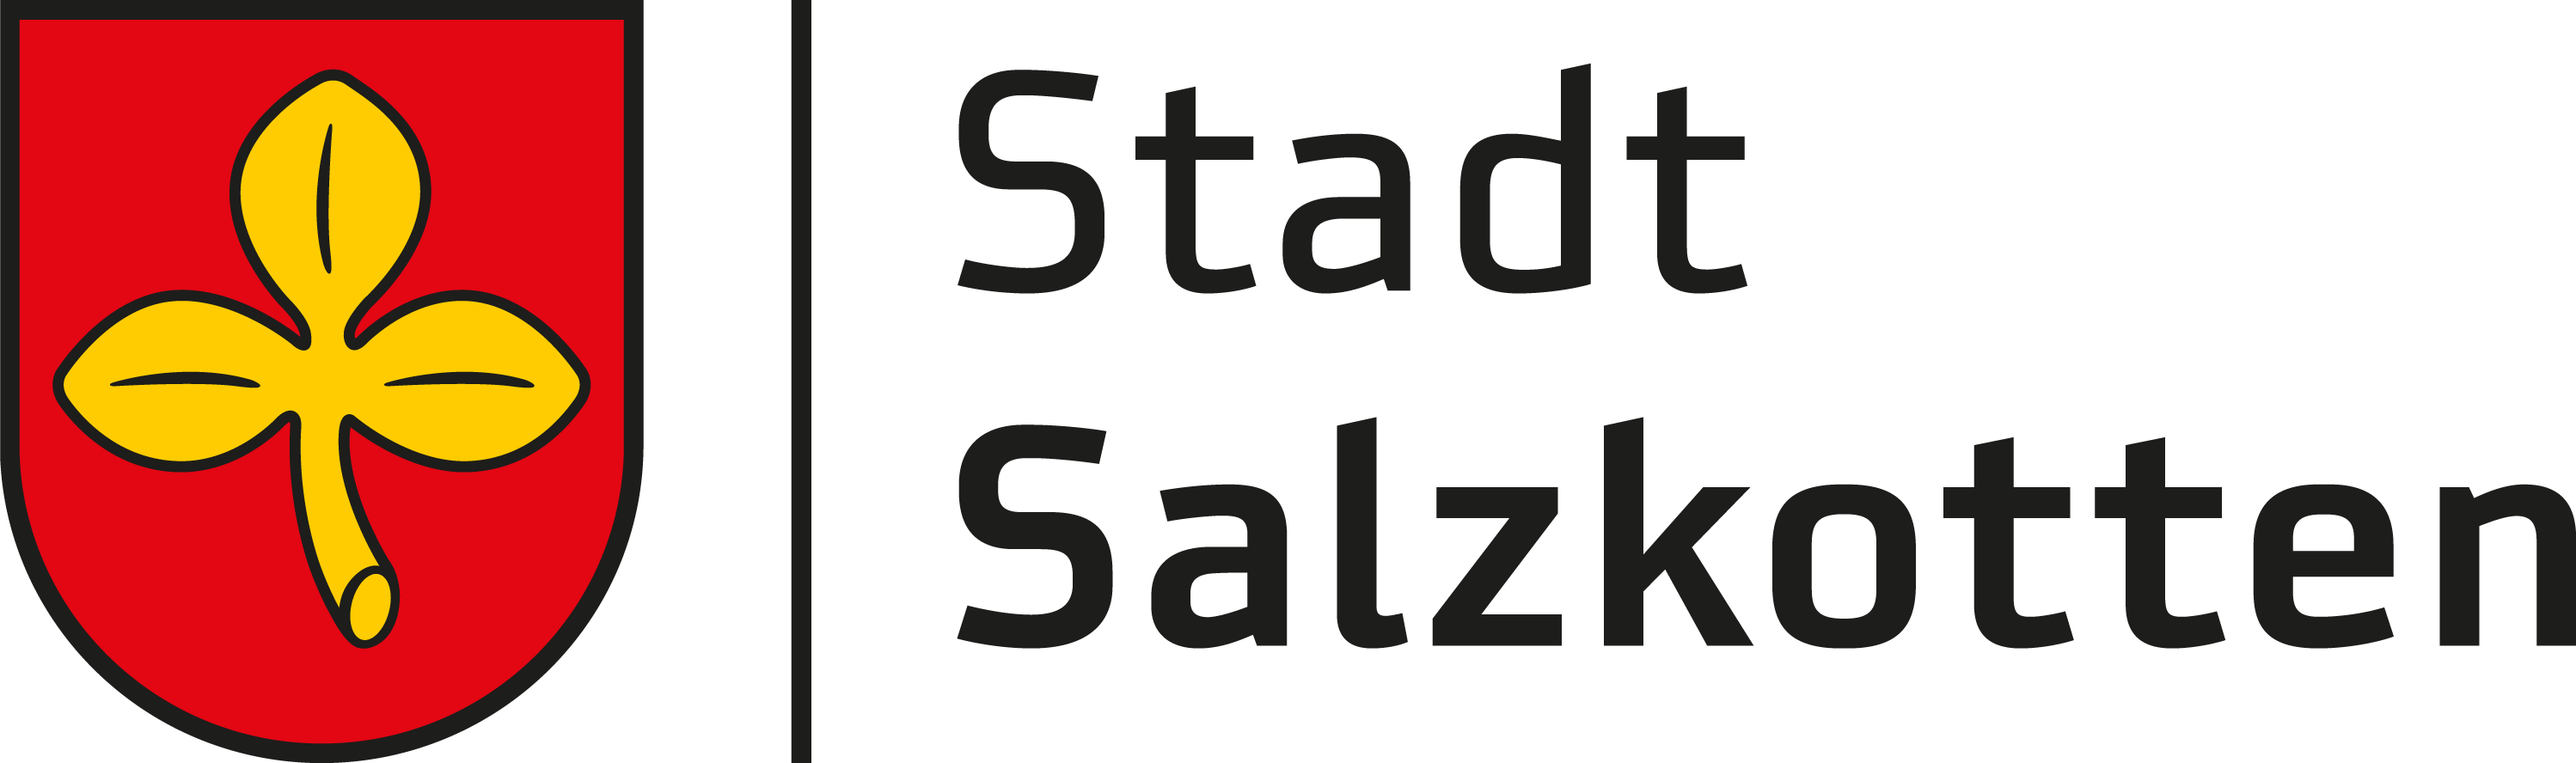 3. Salzkotten im Landkreis Paderborn